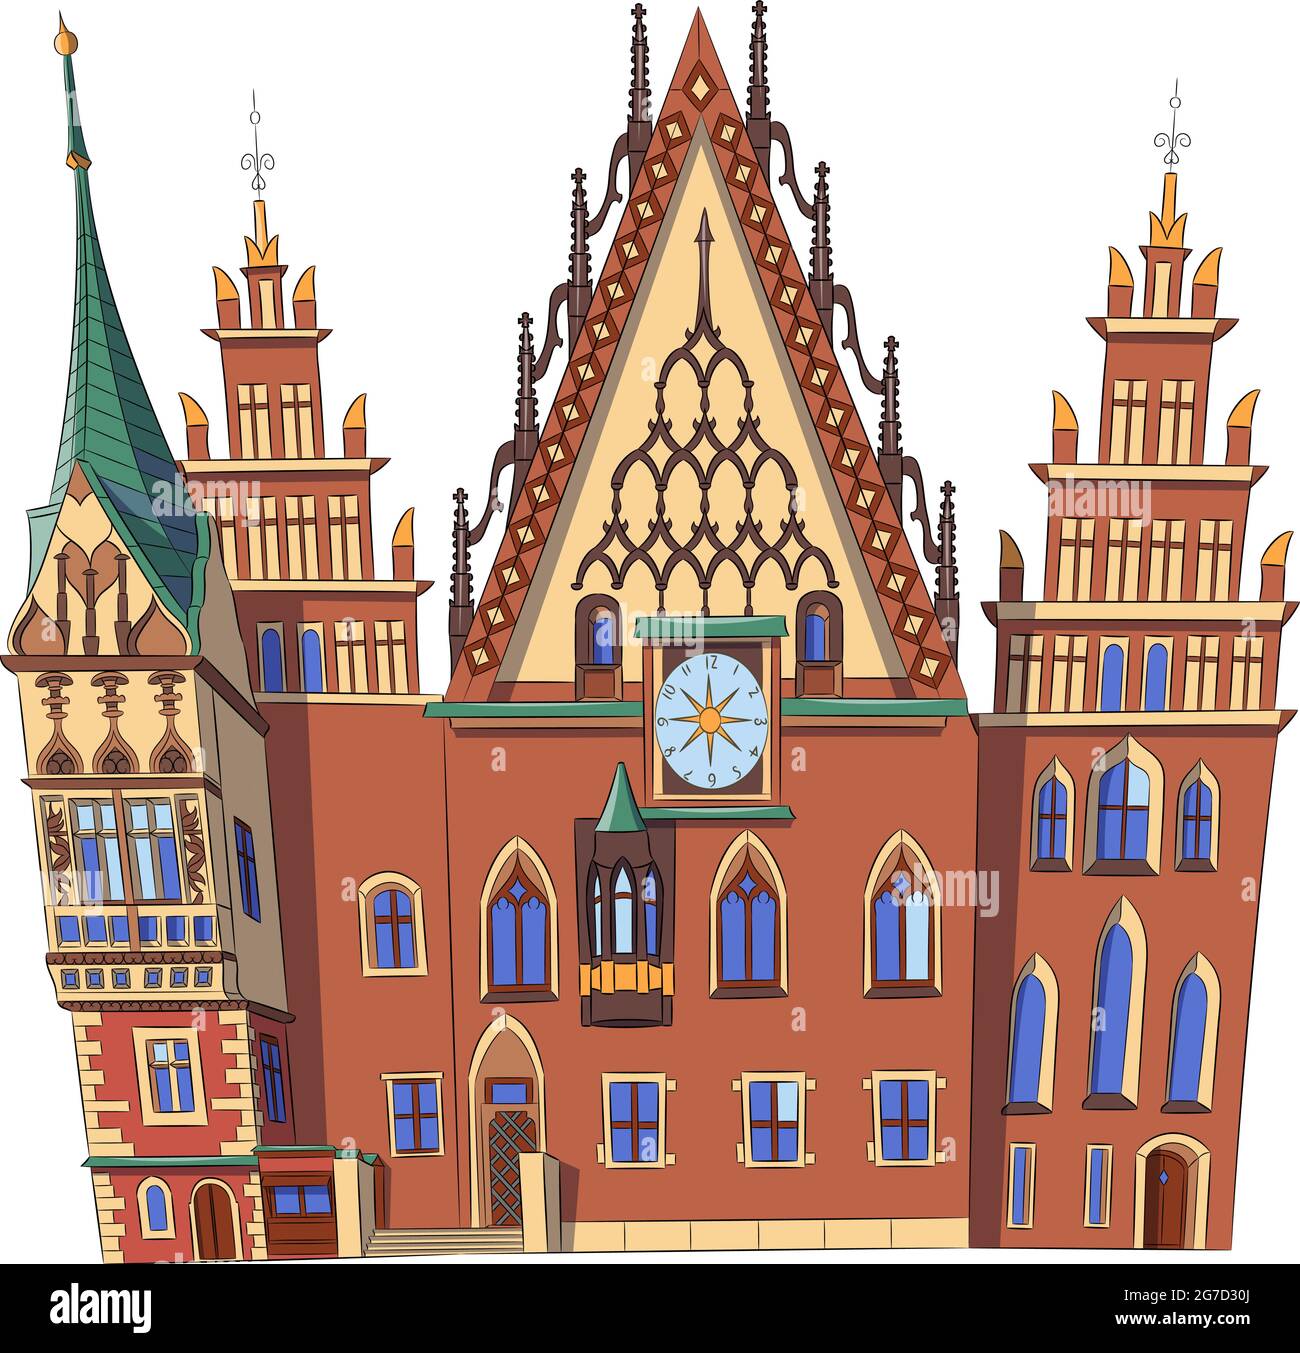 Schönes mittelalterliches altes Rathaus auf dem Marktplatz. Polen. Breslau. Vektorgrafik. Stock Vektor